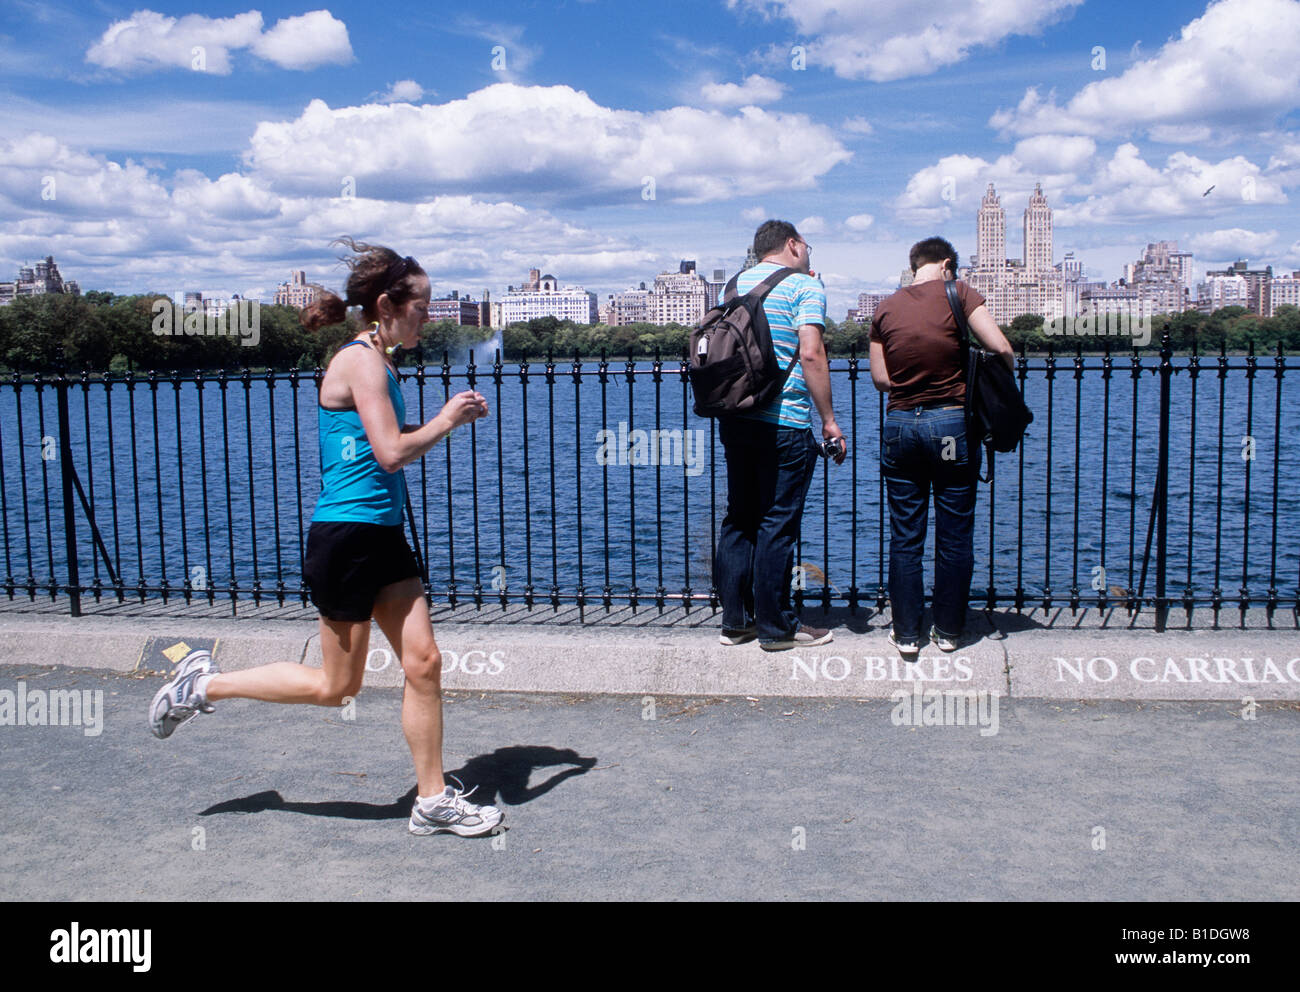 Réservoir Jacqueline Kennedy Onassis ou réservoir Central Park. Femme jogger et deux hommes vous avec des sacs de tricot. Horizon de Central Park West Banque D'Images